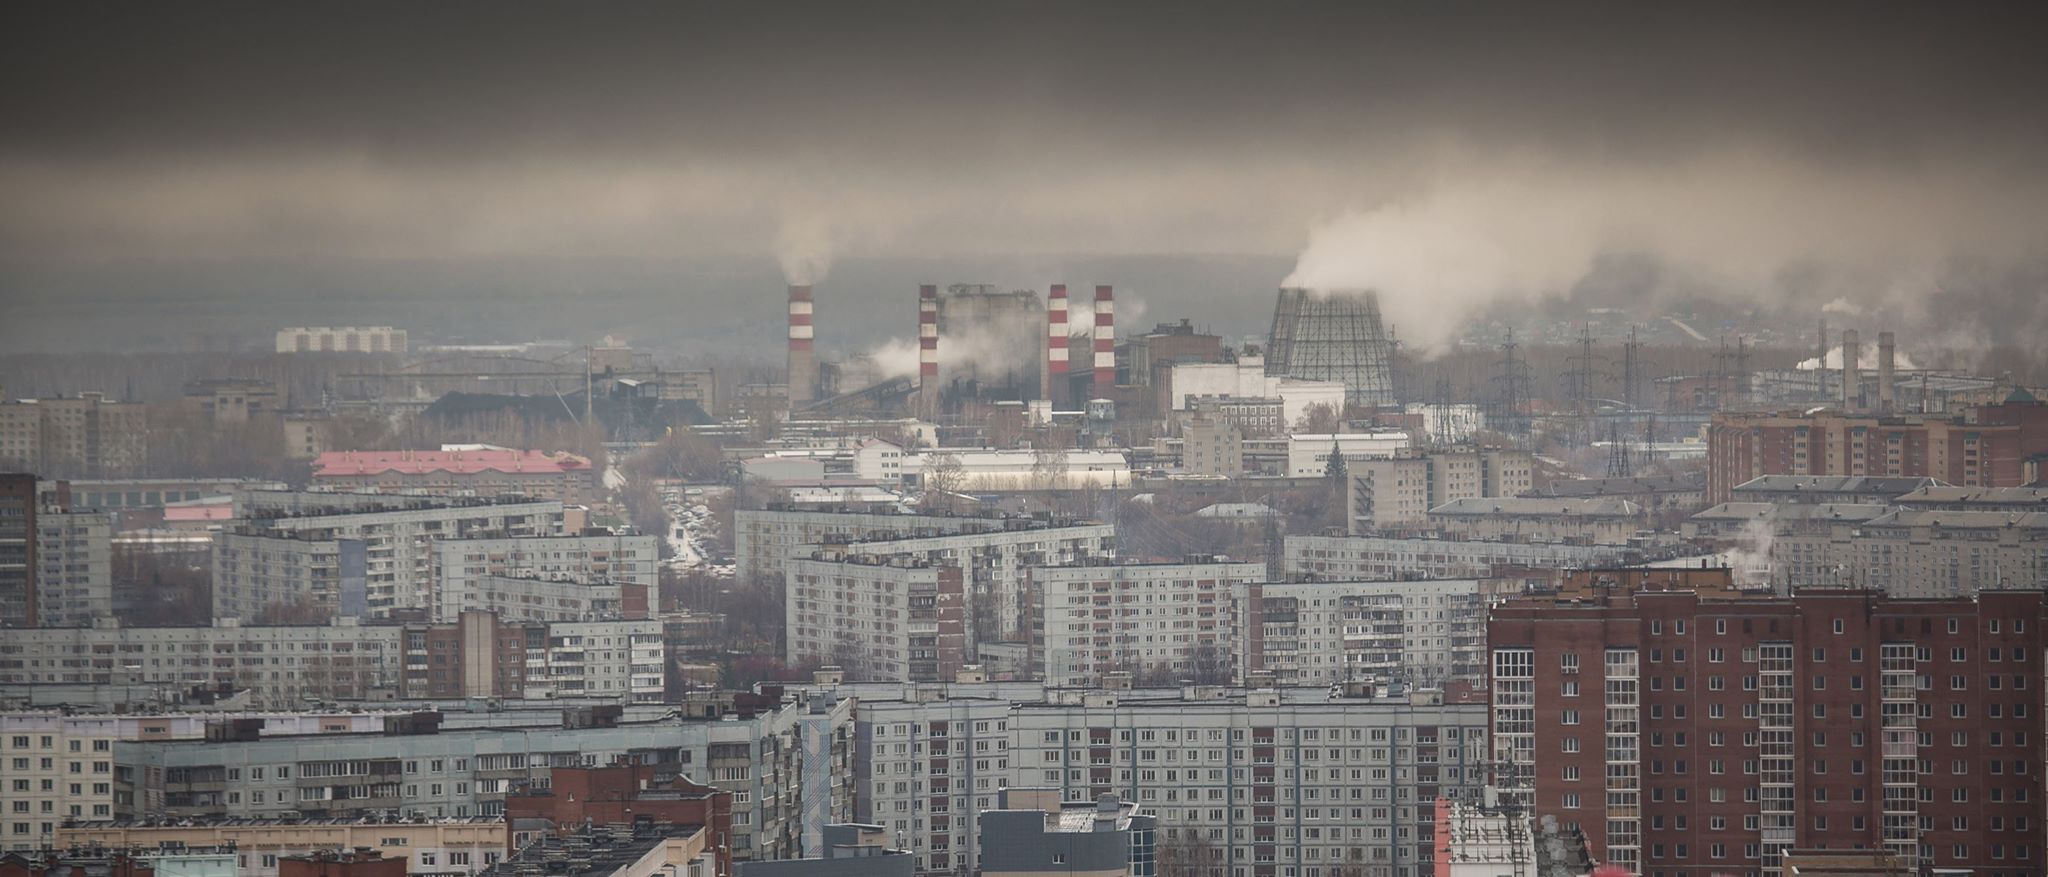 Метеорологи зафиксировали превышение опасного газа с резким запахом в нескольких районах Новосибирска